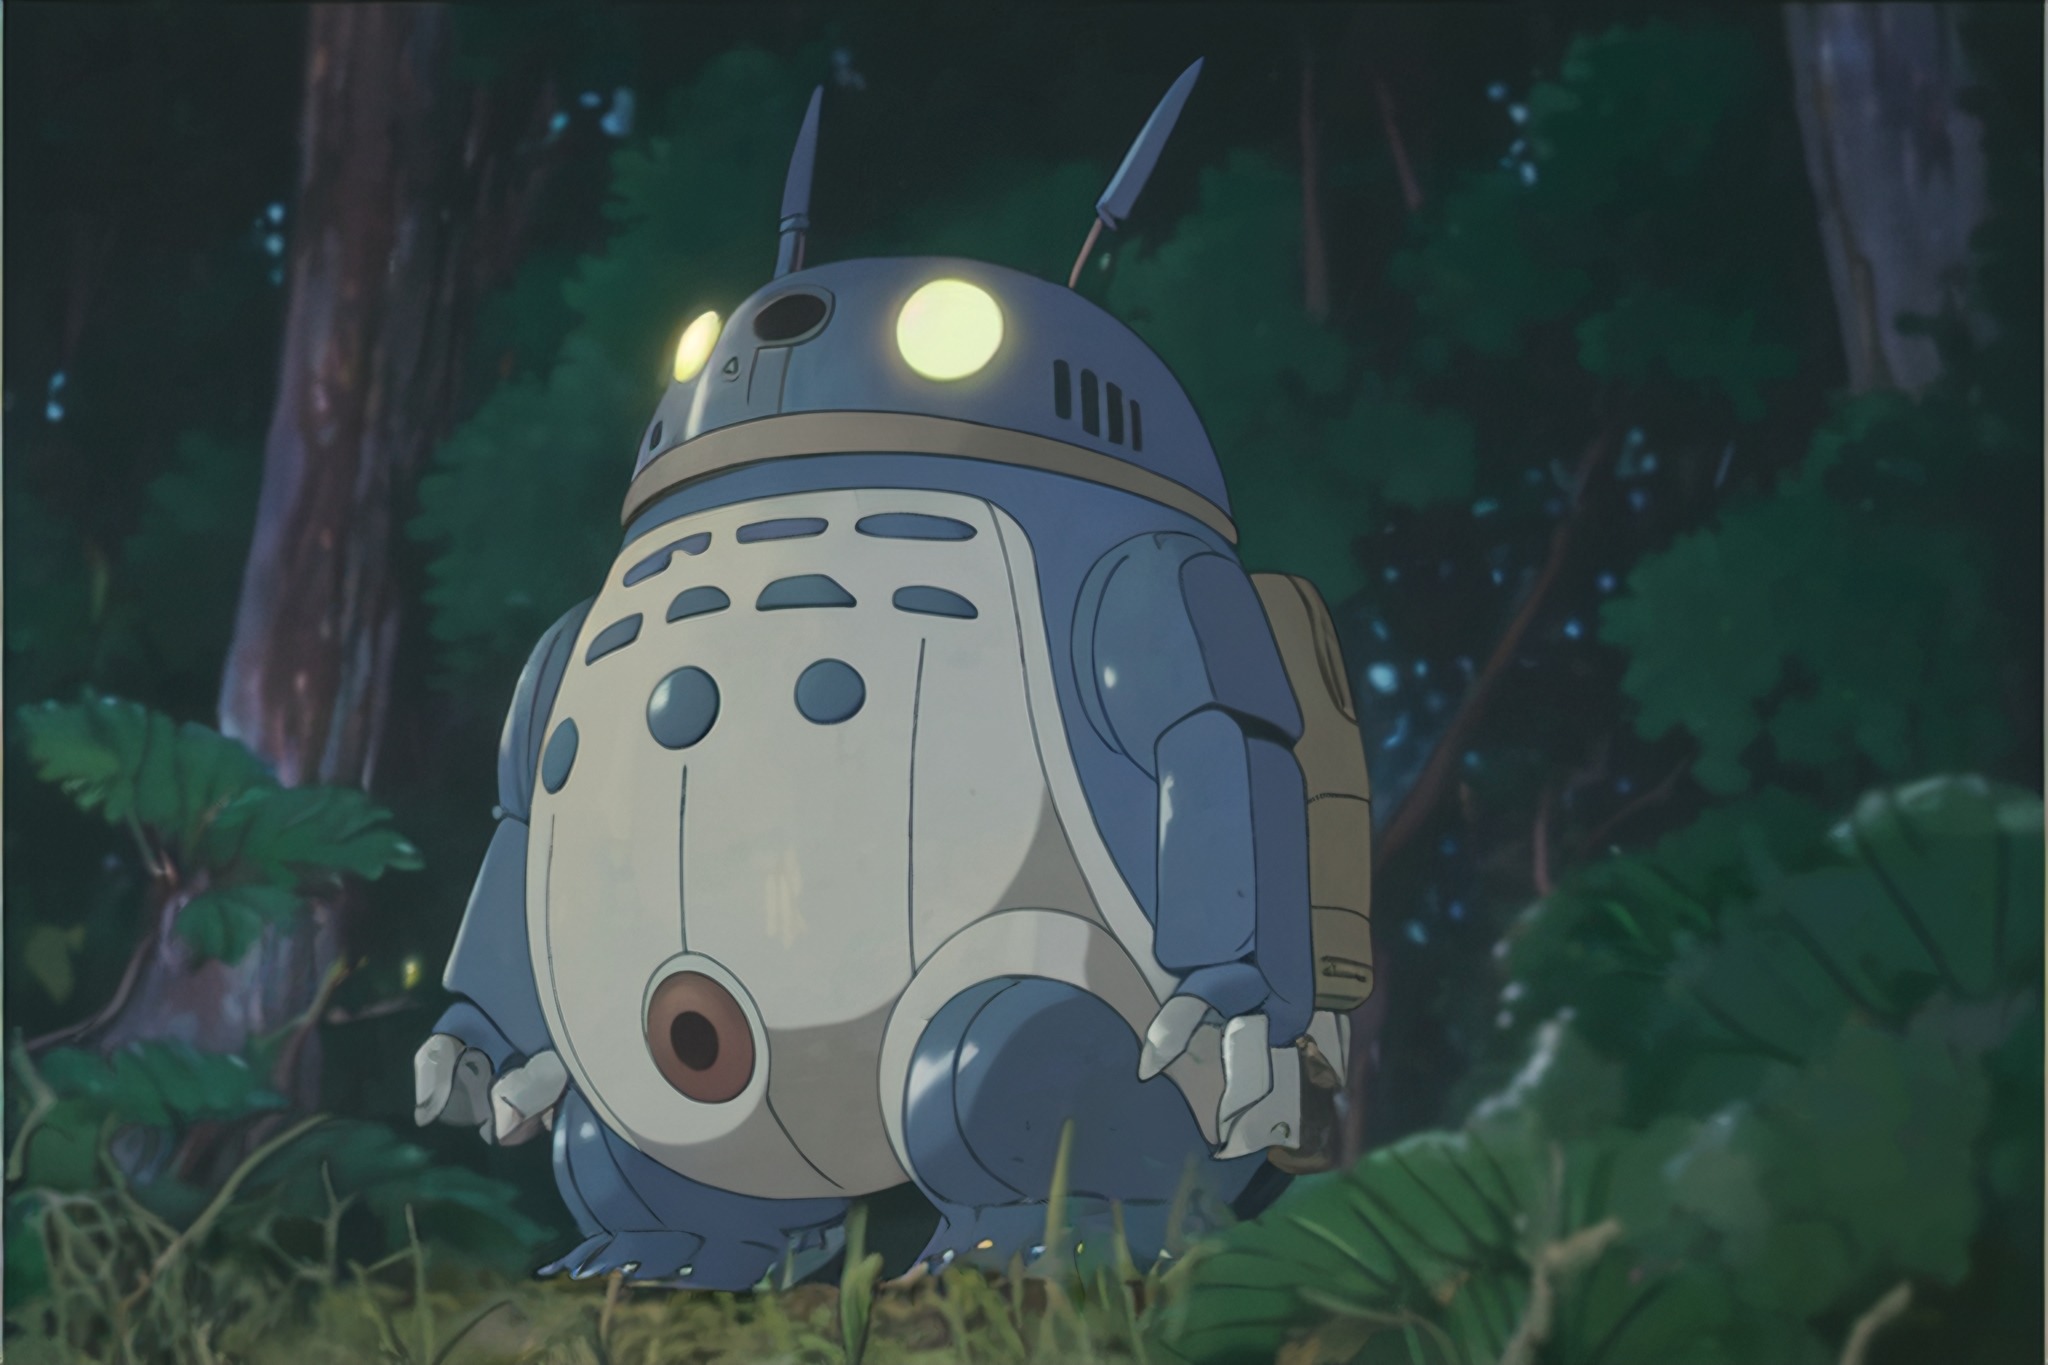 Le réseau neuronal Nijijourney représente les personnages emblématiques de Star Wars dans le style du Studio Ghibli-11